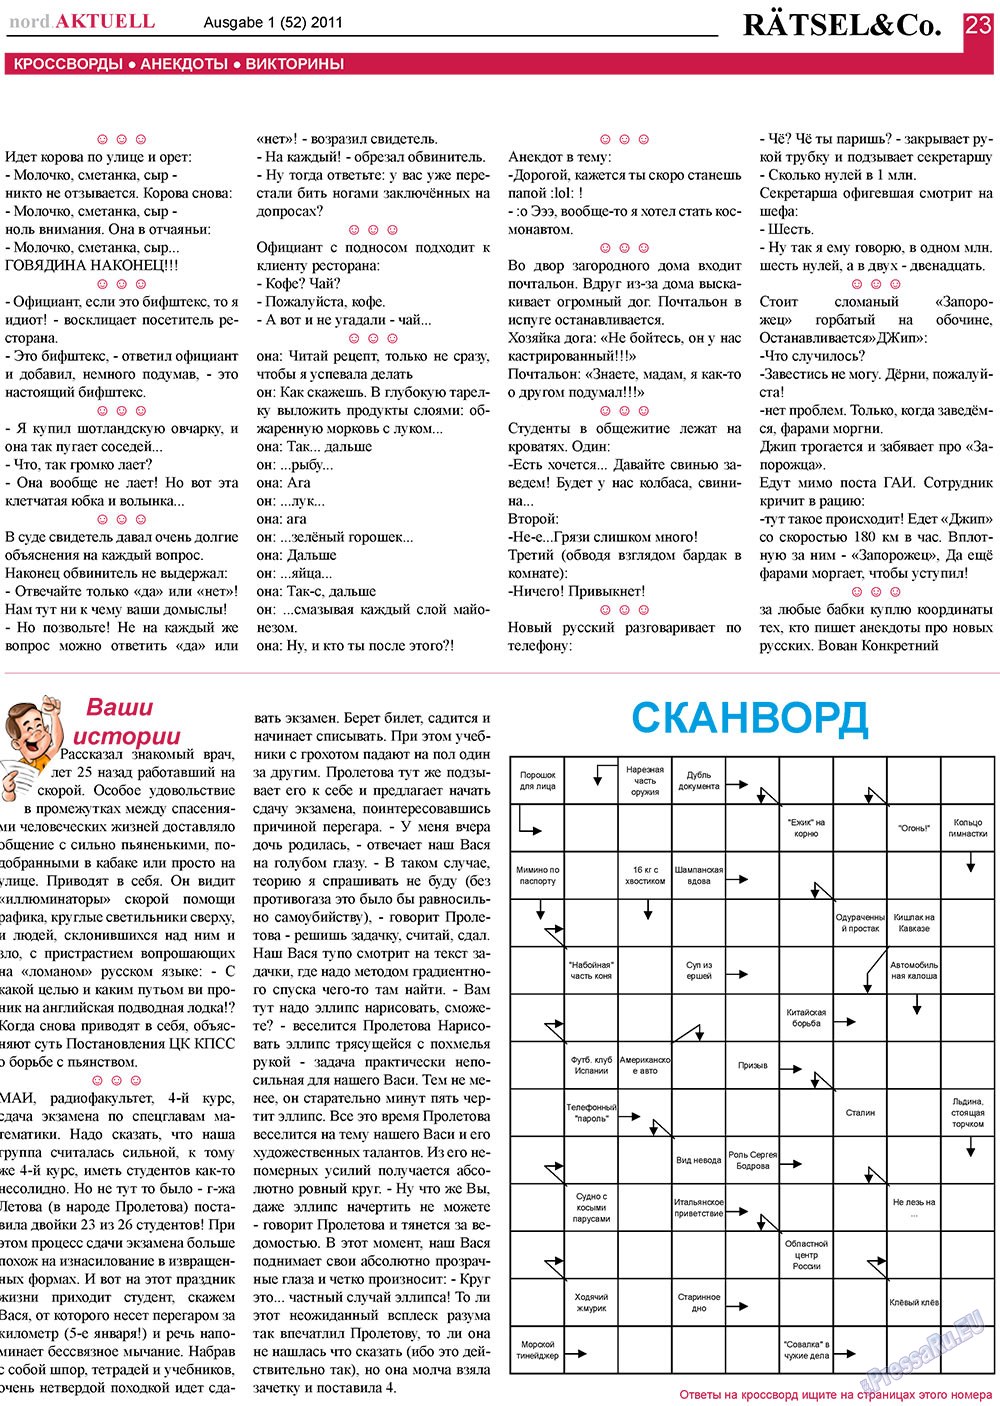 nord.Aktuell (Zeitung). 2011 Jahr, Ausgabe 1, Seite 23